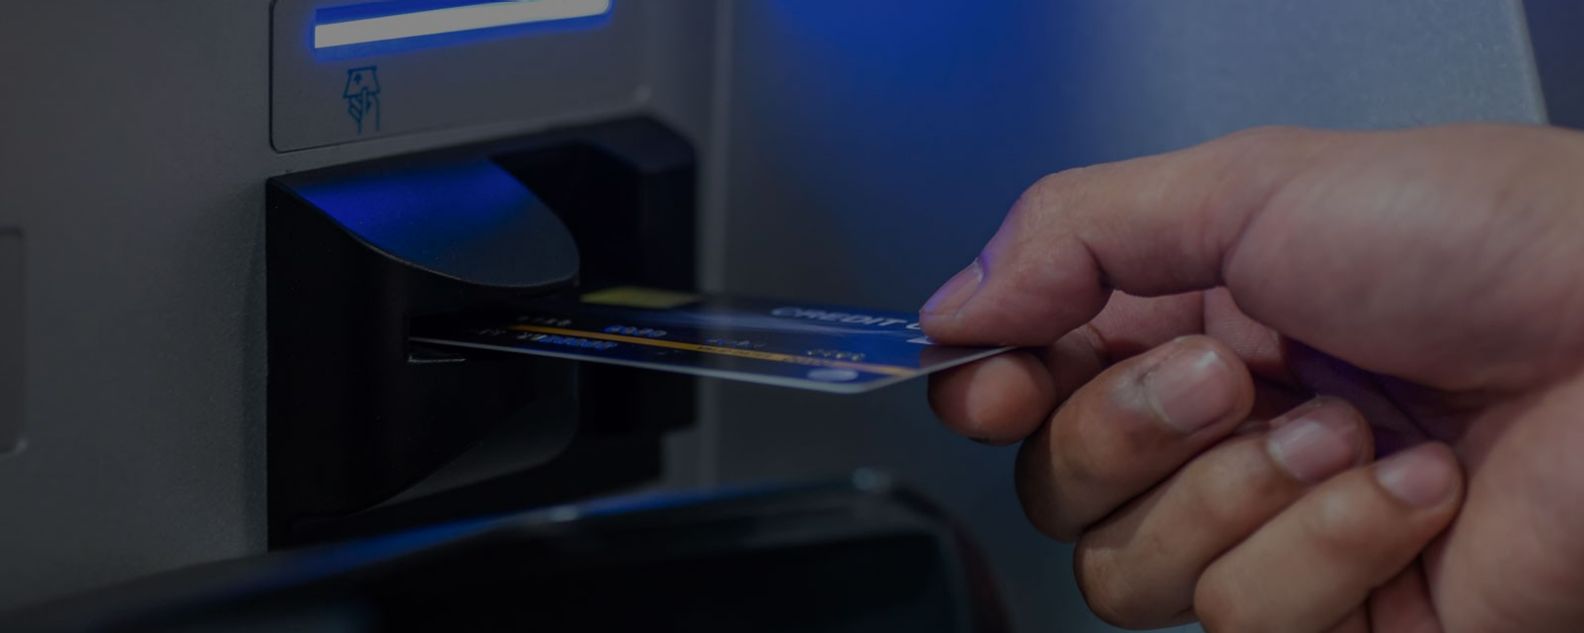 Homem inserindo cartão de débito em uma máquina de caixa eletrônico